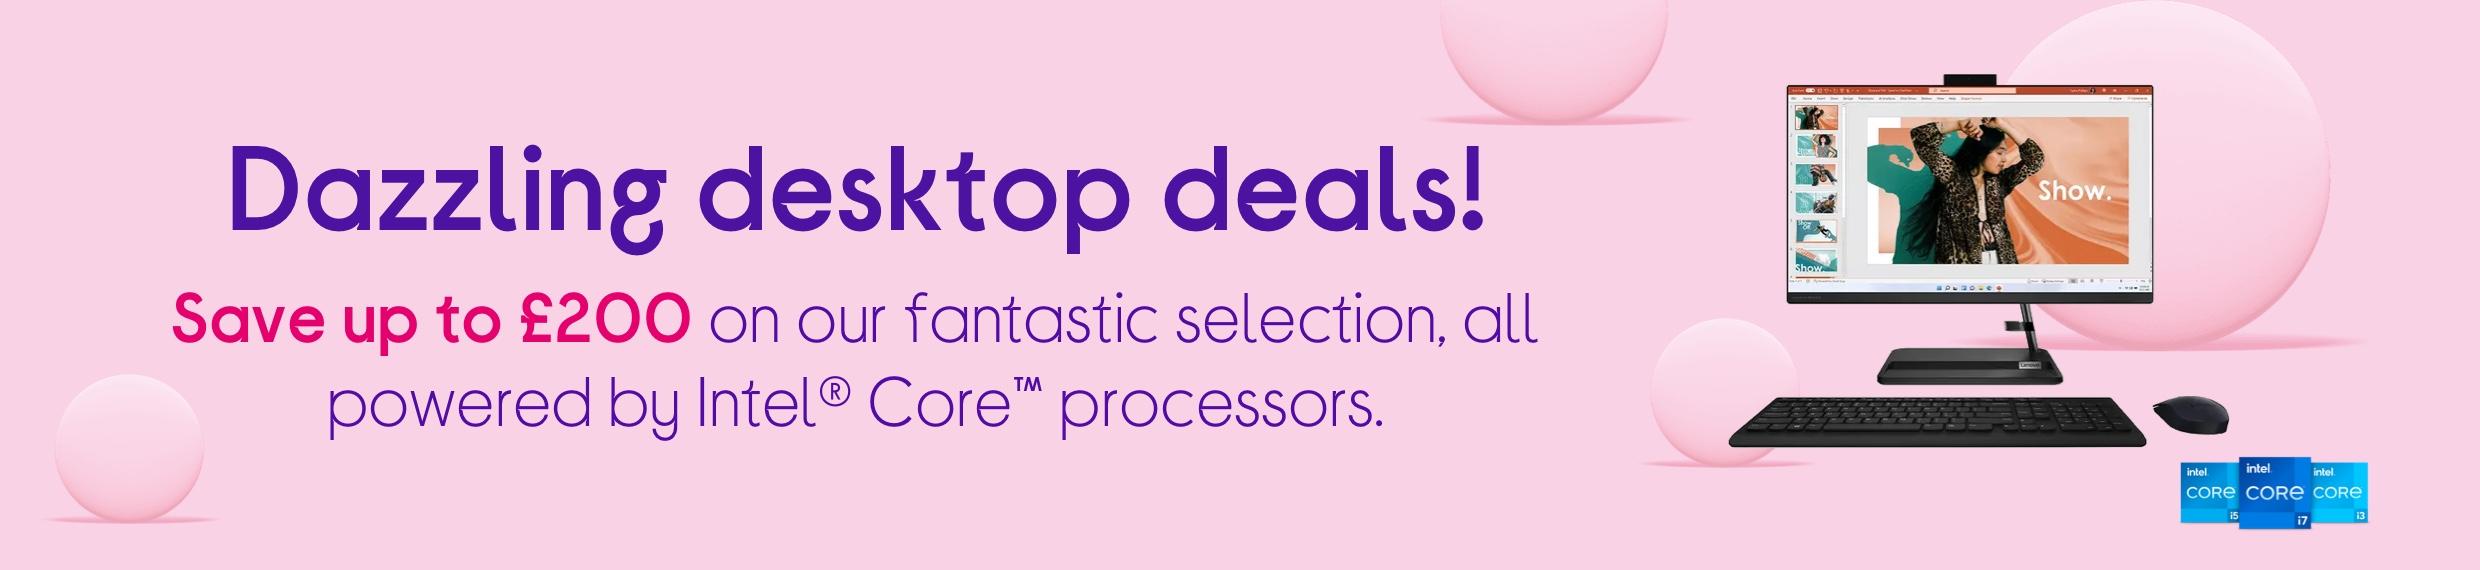 Best Desktop Deals